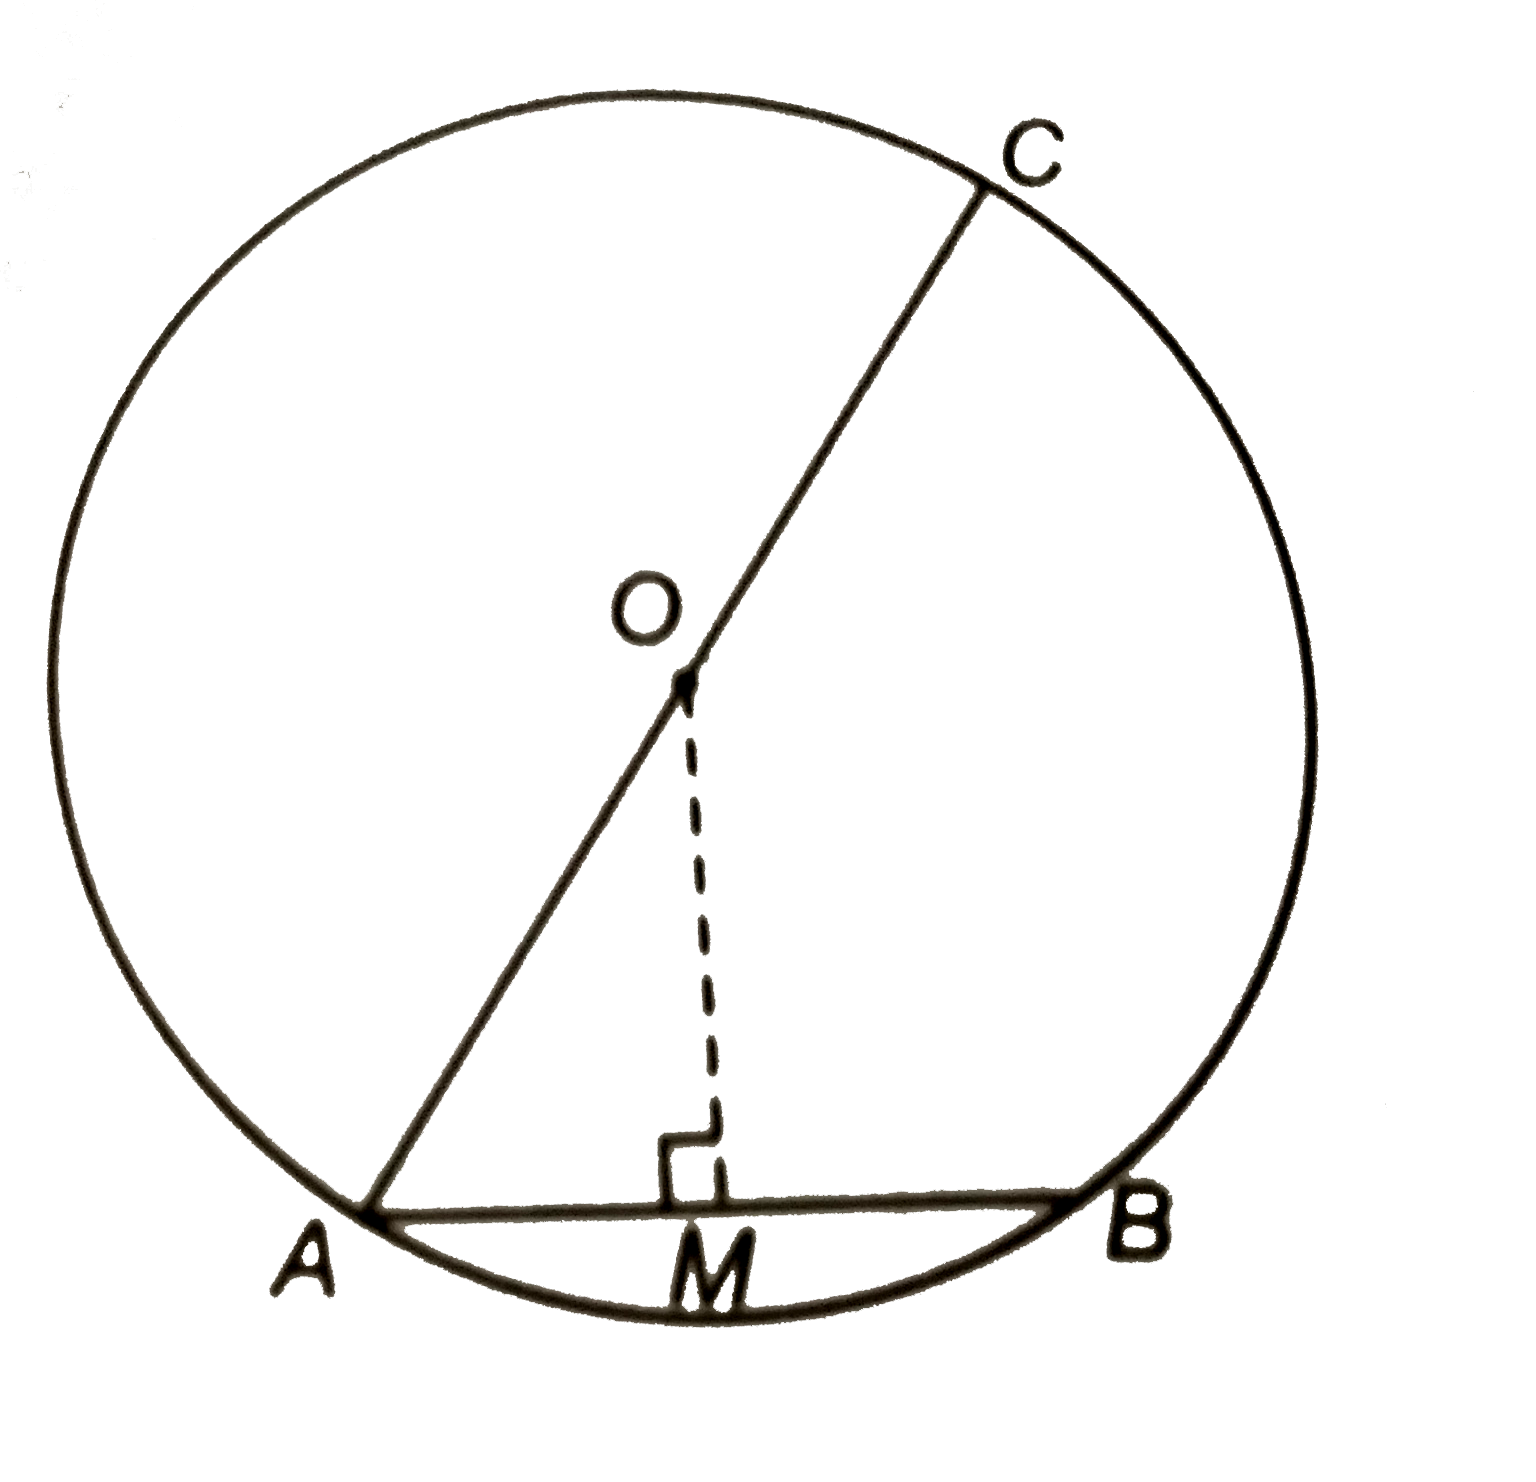 संलग्न चित्र में O वृत्त का केन्द्र है | यदि व्यास AC = 26 सेमी और जीवा AB = 10  सेमी है, तो वृत्त के केन्द्र से AB पर लम्ब की लम्बाई ज्ञात कीजिए |